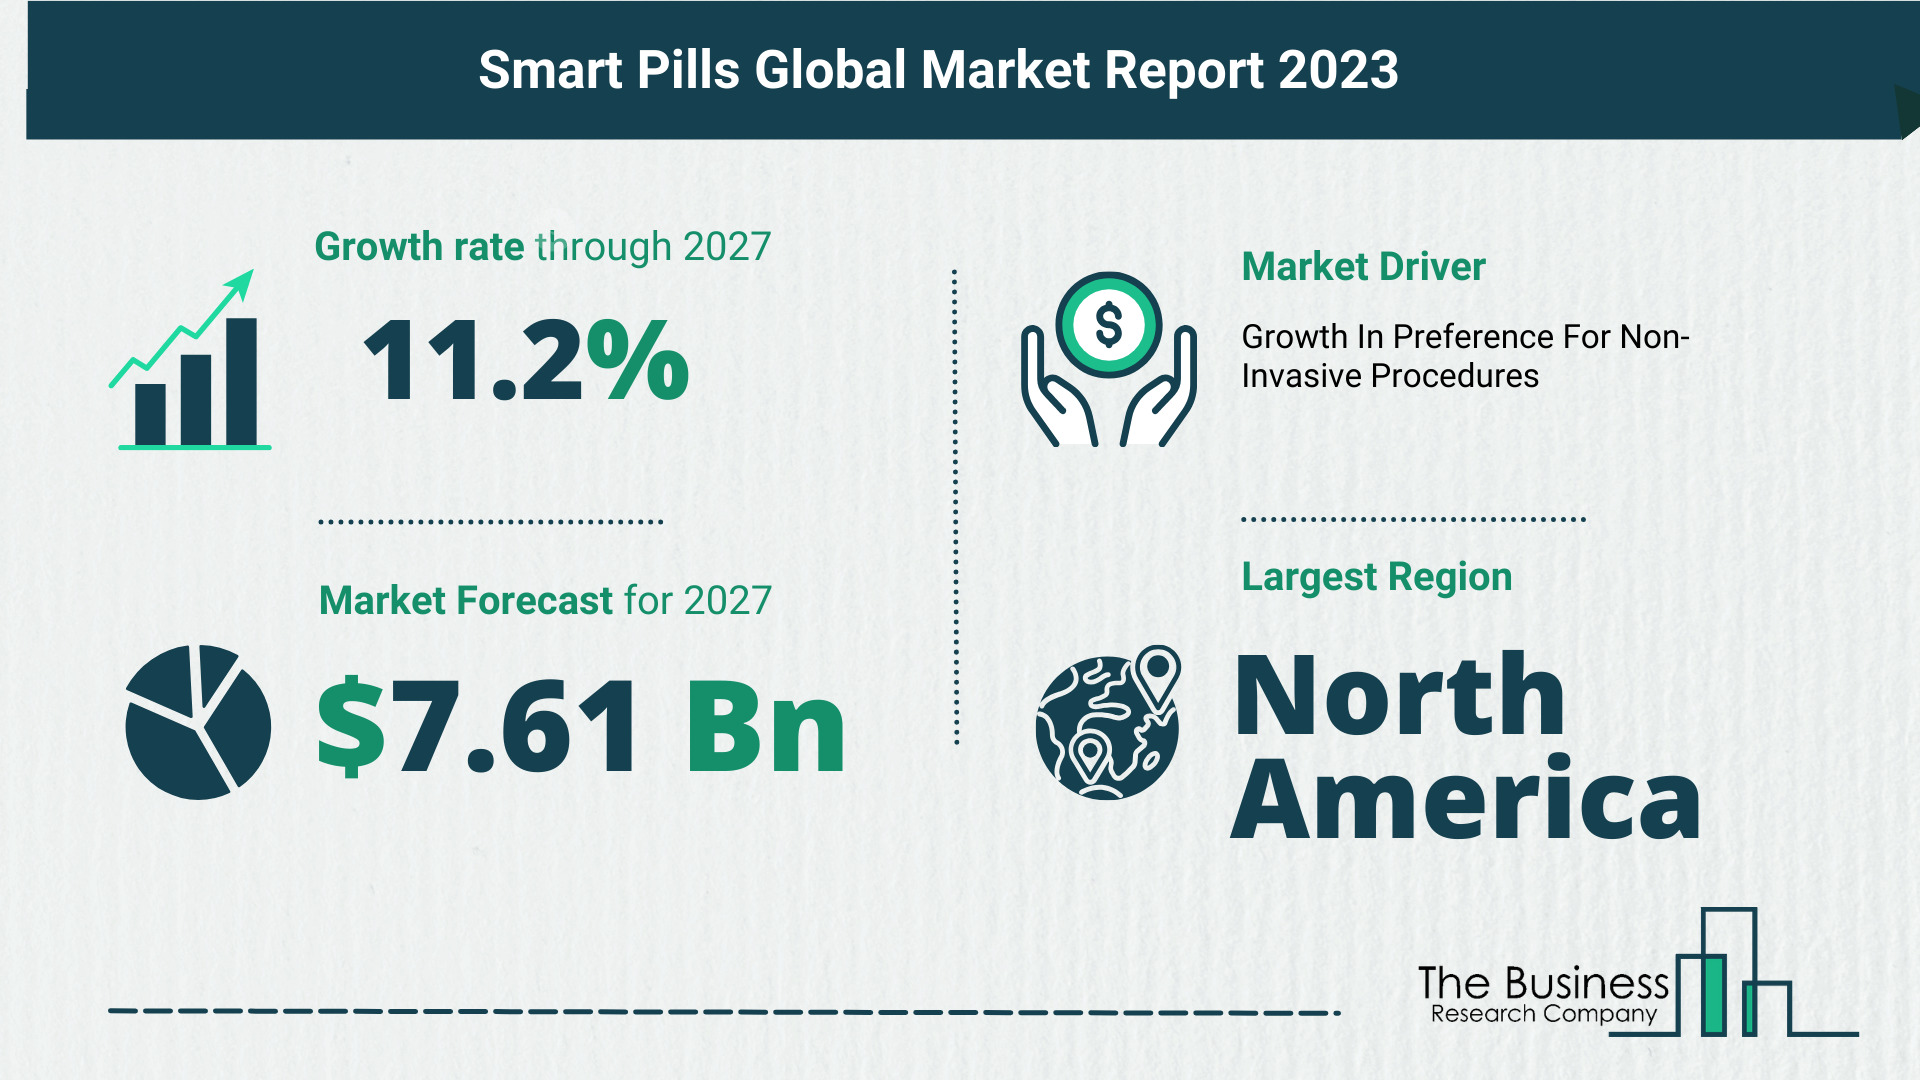 Smart Pills Market Size